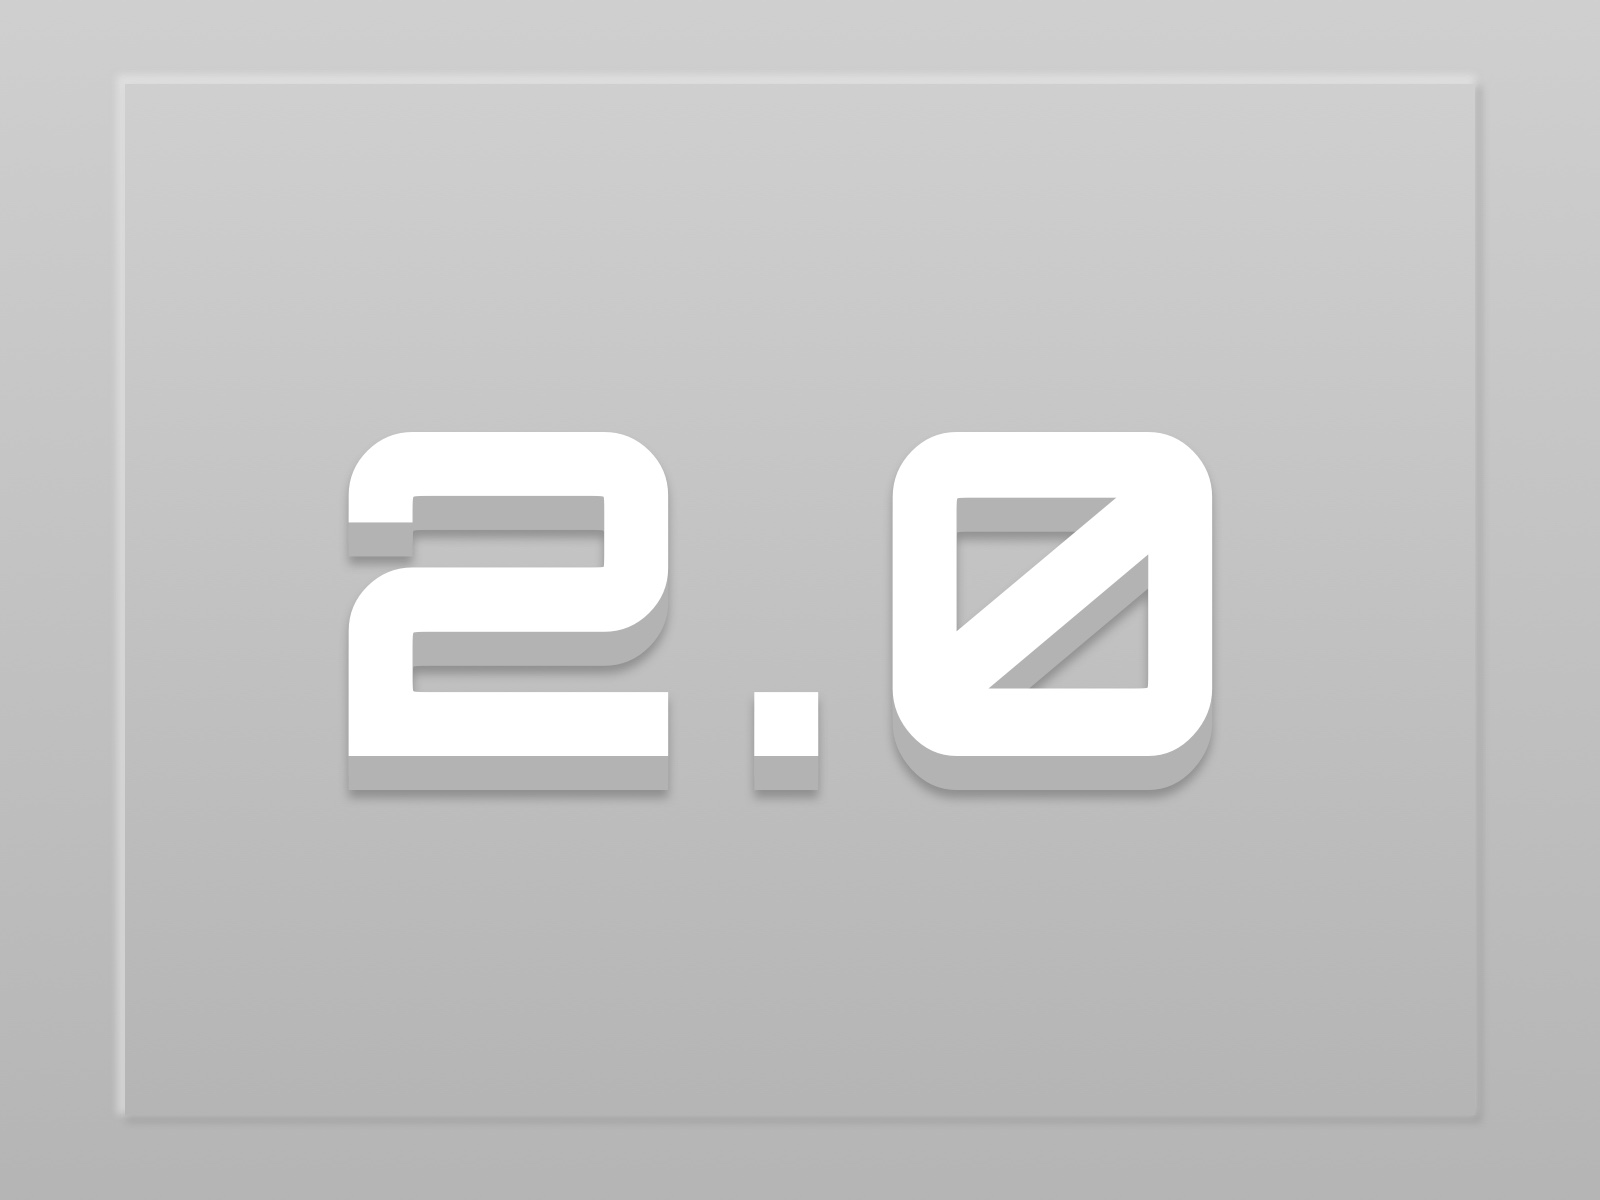 Illustratie met het getal 2.0 voor de laatste MA!N release in het wit op een grijze achtergrond.